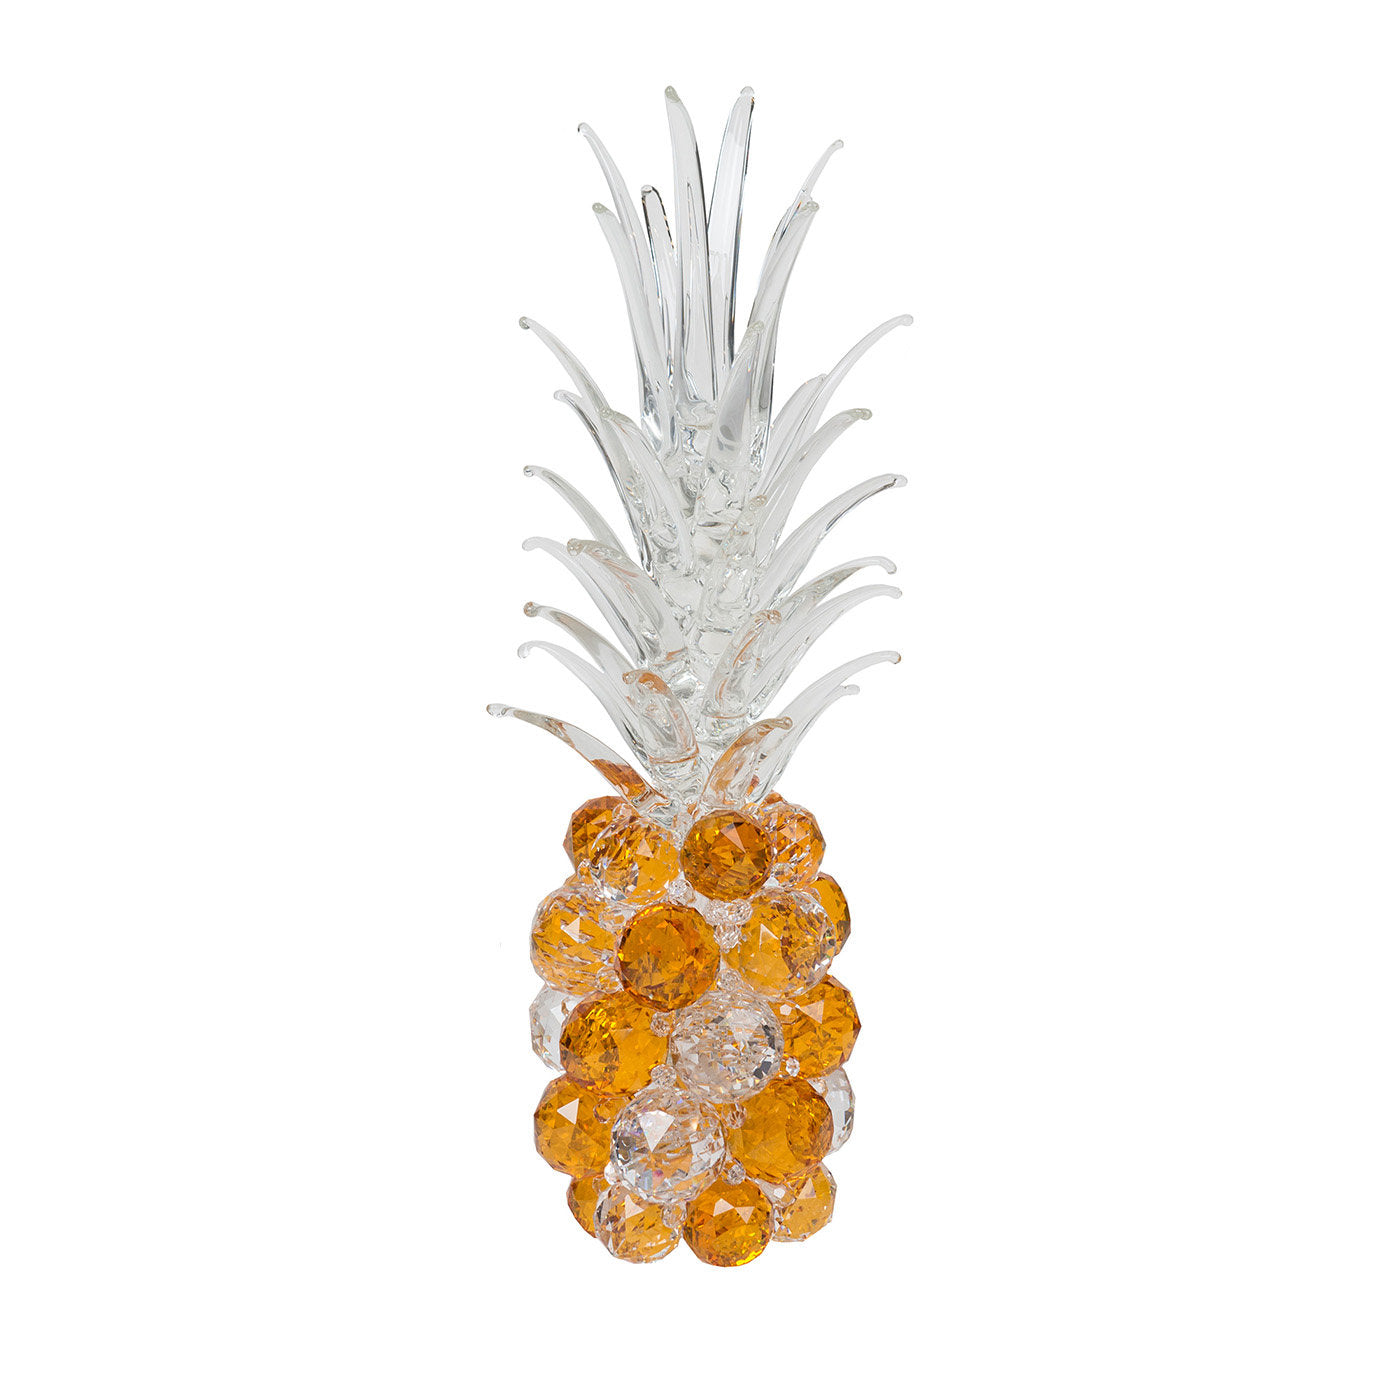 Grand ananas en verre ambré - Vue principale